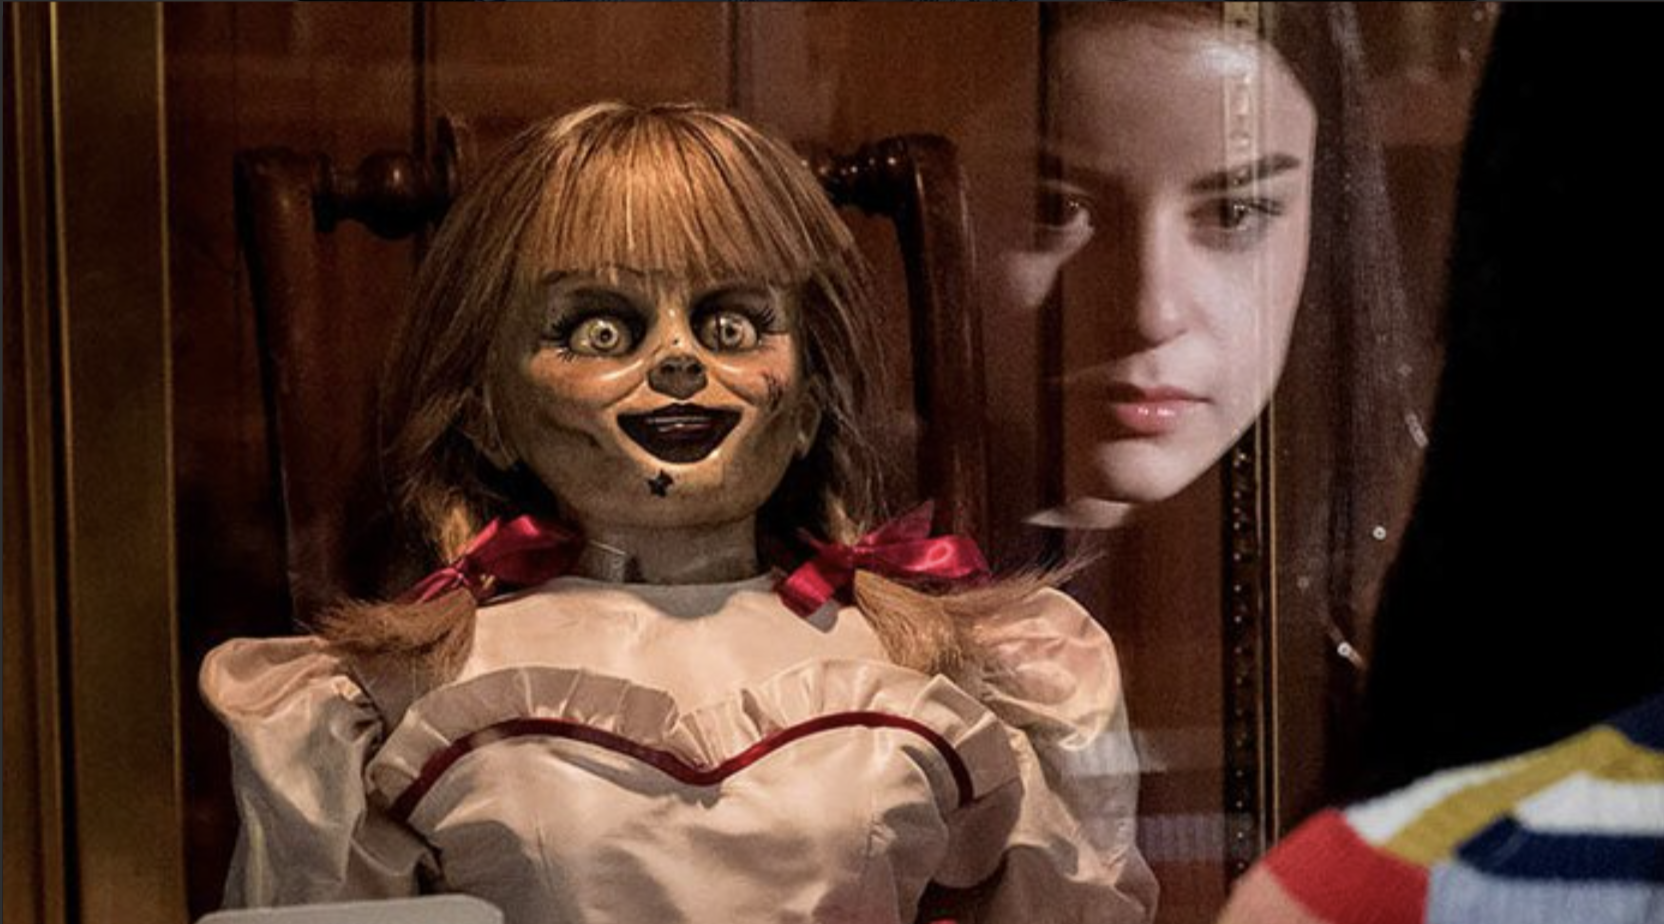 Nova cena de Annabelle 3 traz terror embaixo das cobertas